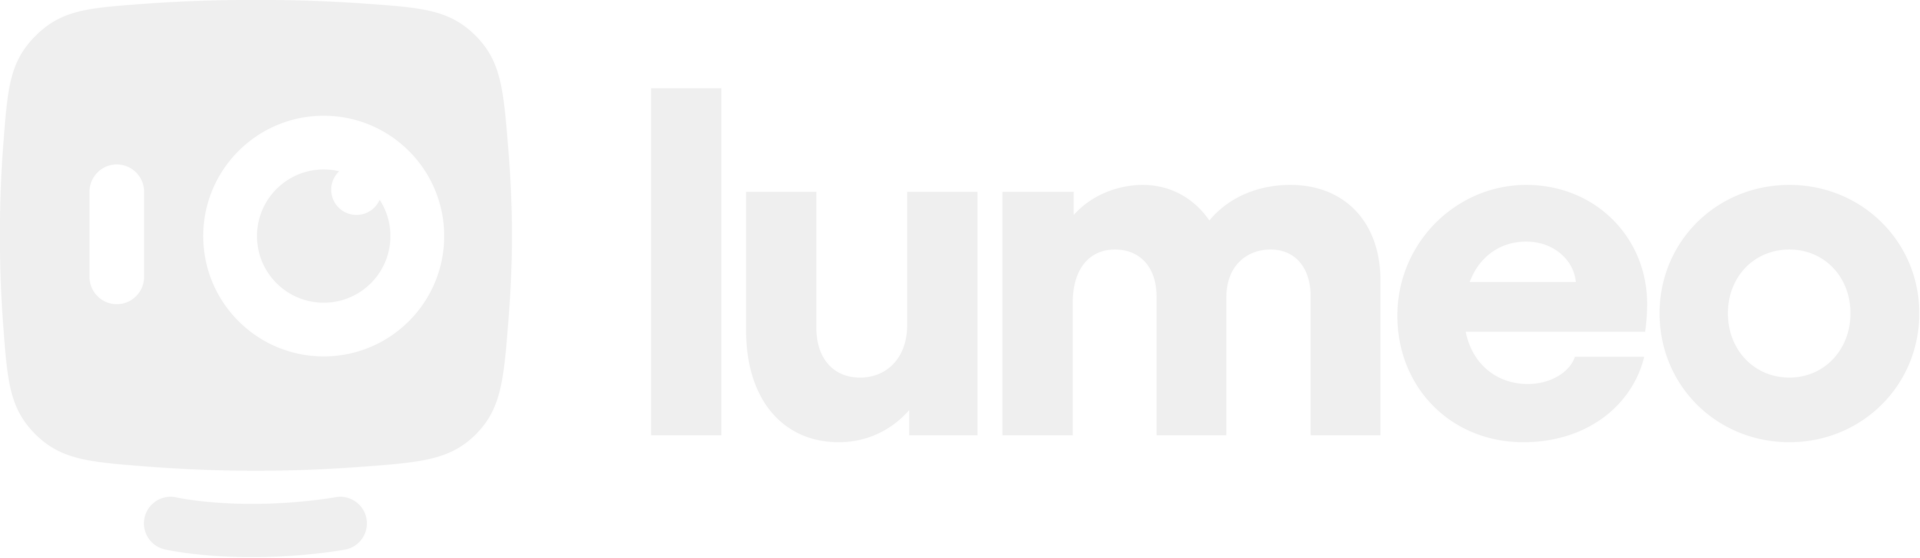 Lumeo logo